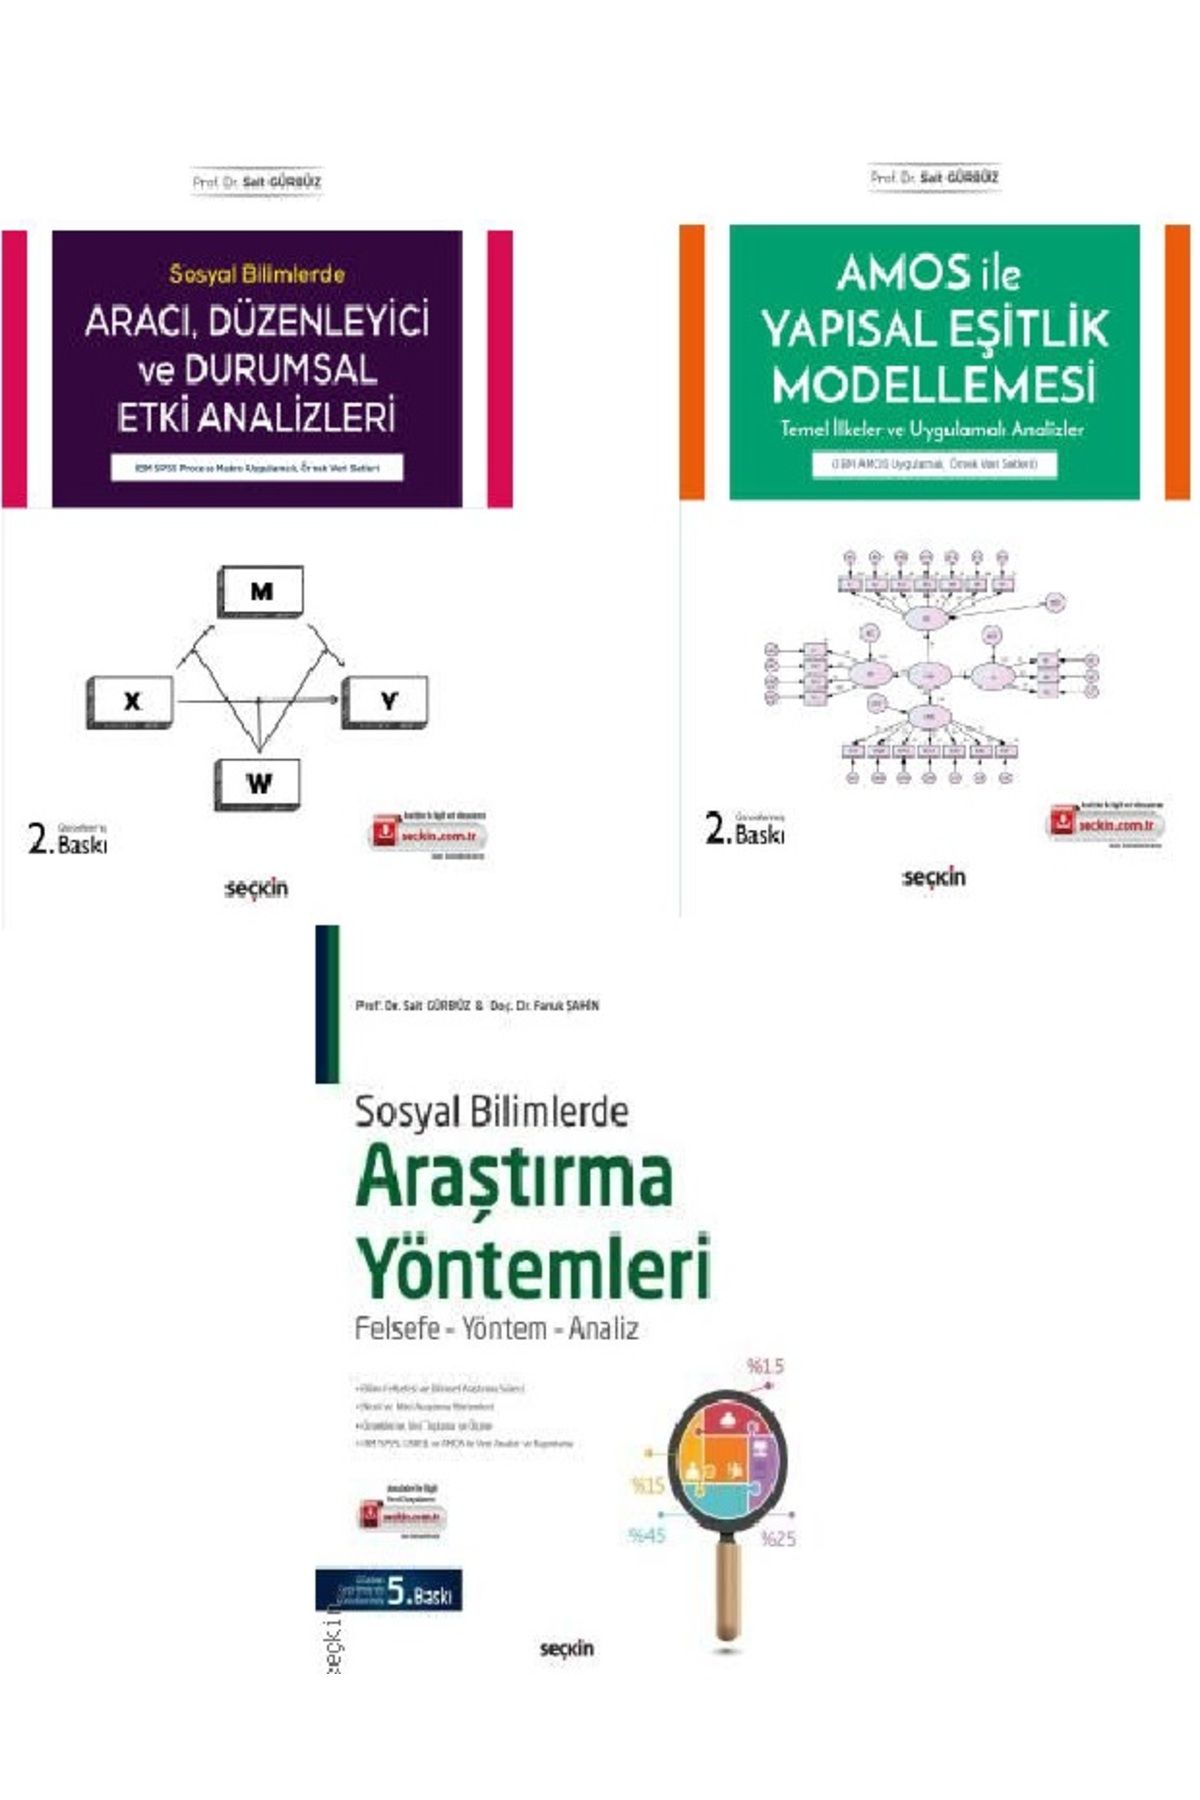 Seçkin Yayıncılık Aracı ve Düzenleyici Etki Analizler-AMOS ile Yapısal Eşitlik Modellemesi-Sosyal Bilimlerde Araştırma